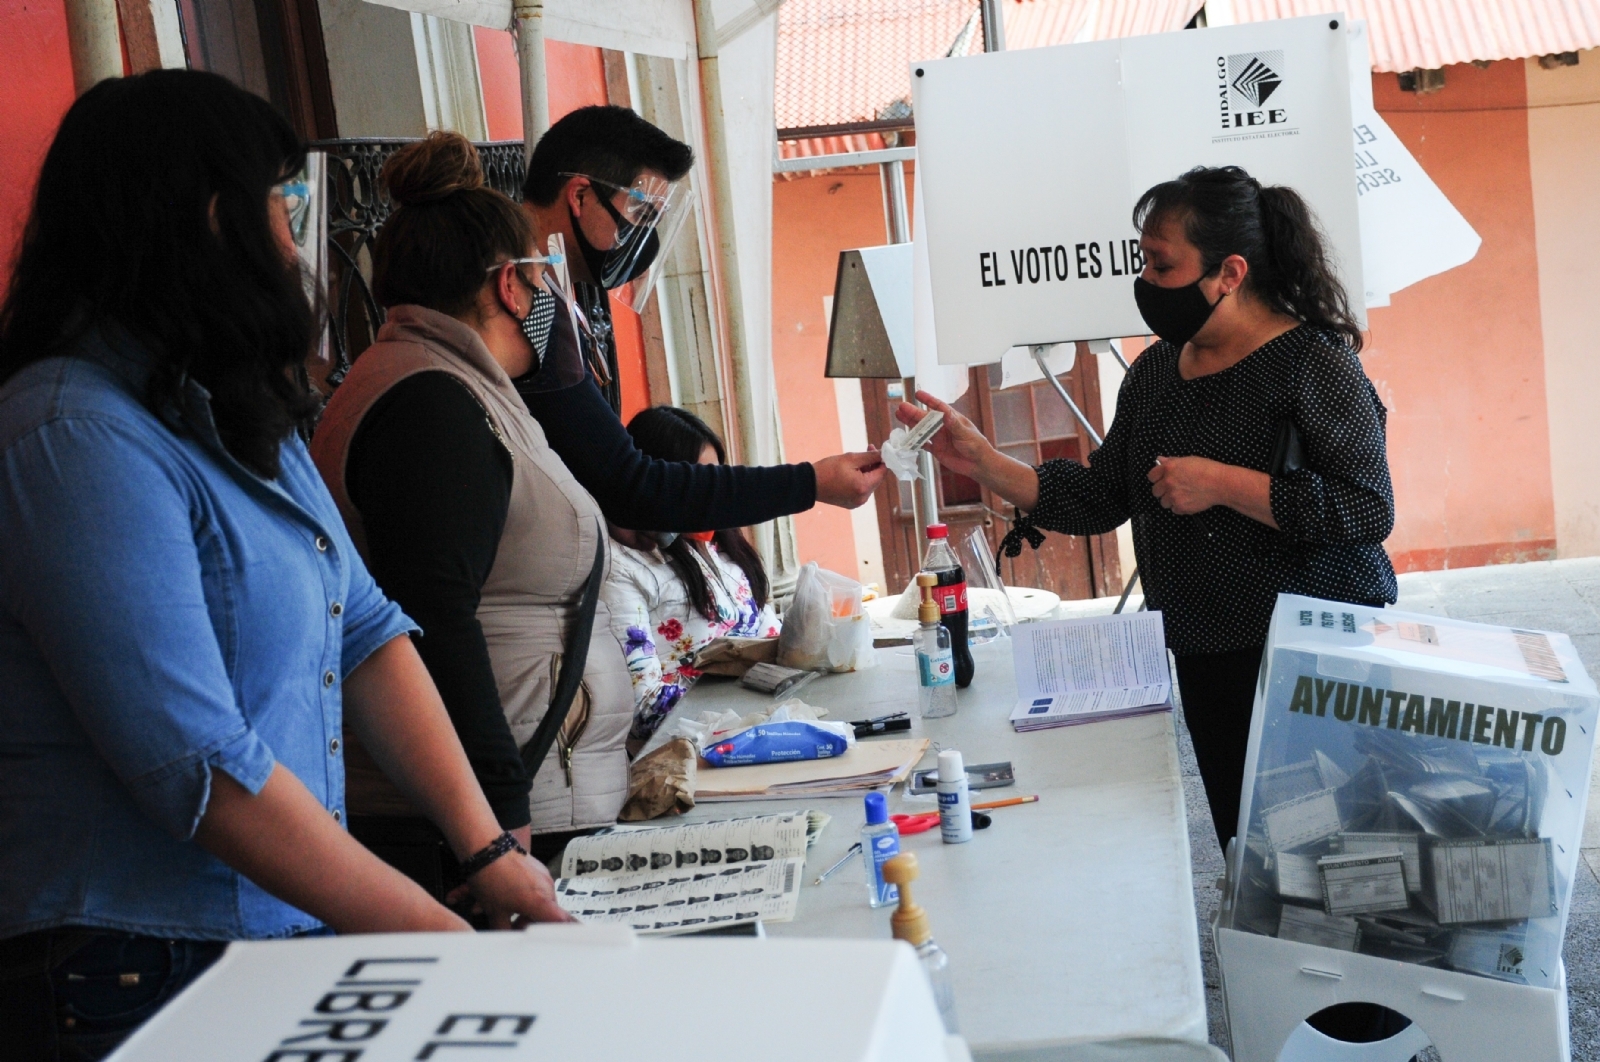 Casos sospechosos de COVID-19 no podrán votar en Yucatán, aclara IEPAC